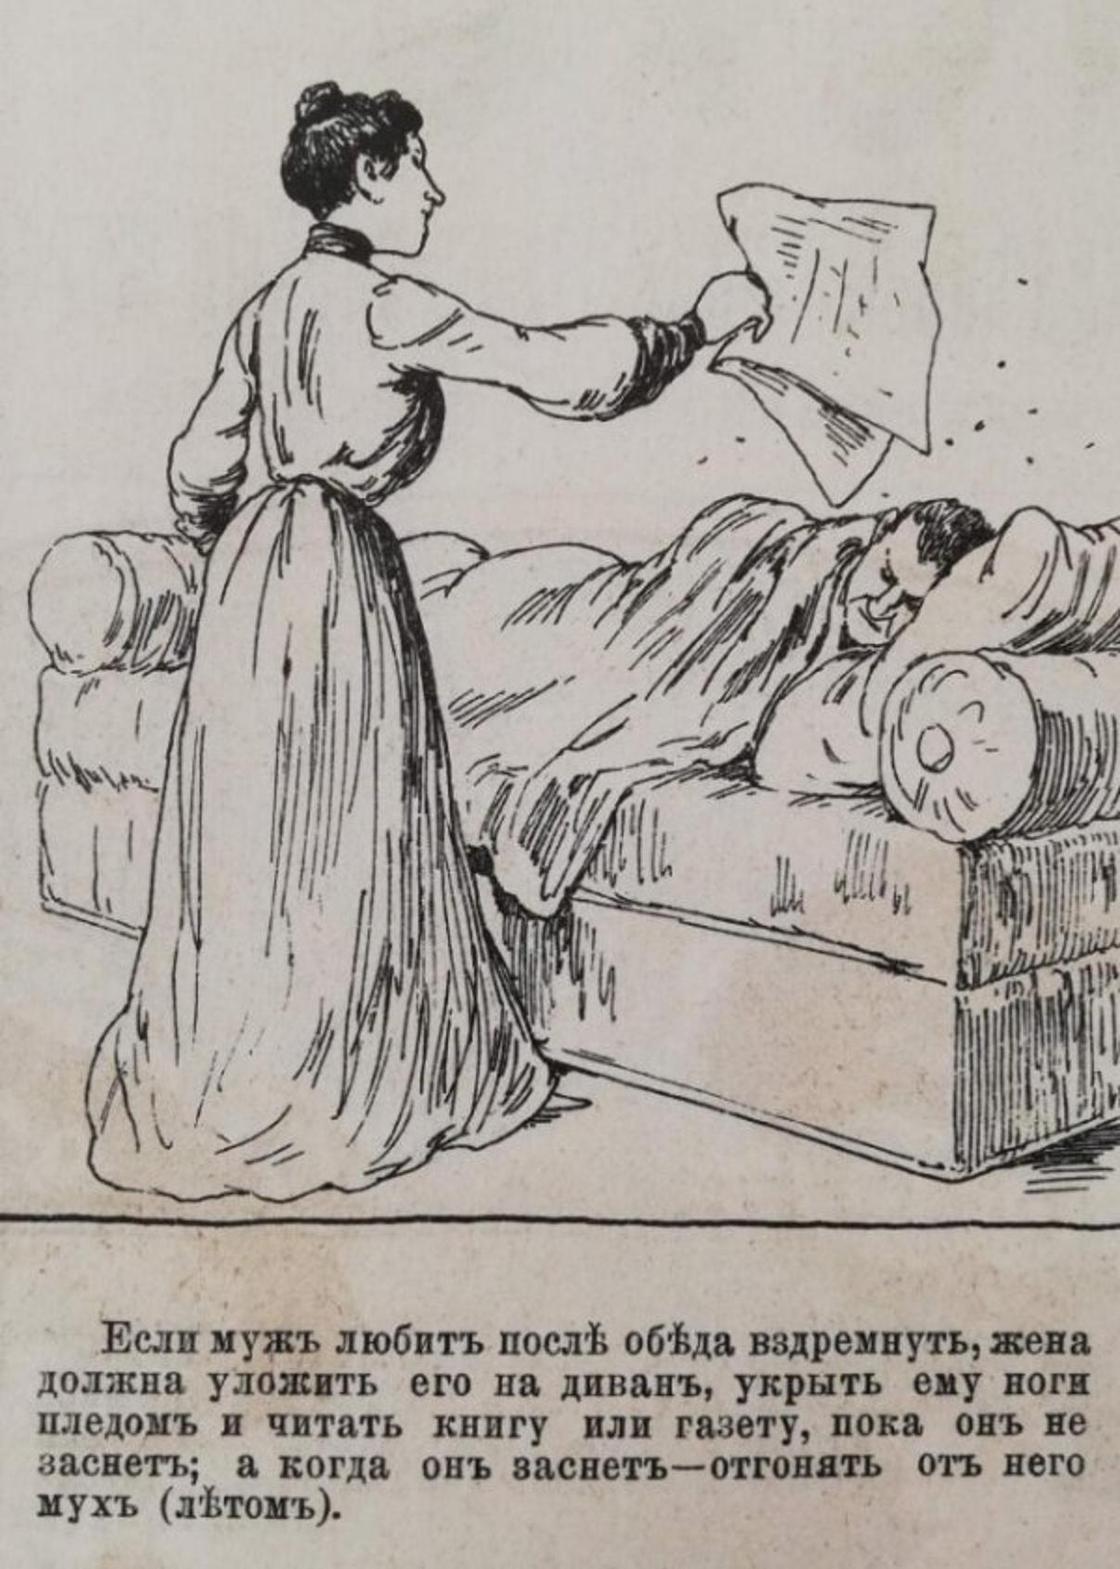 Иллюстрации из журнала конца 19 века: "Как должна вести себя хорошая жена"